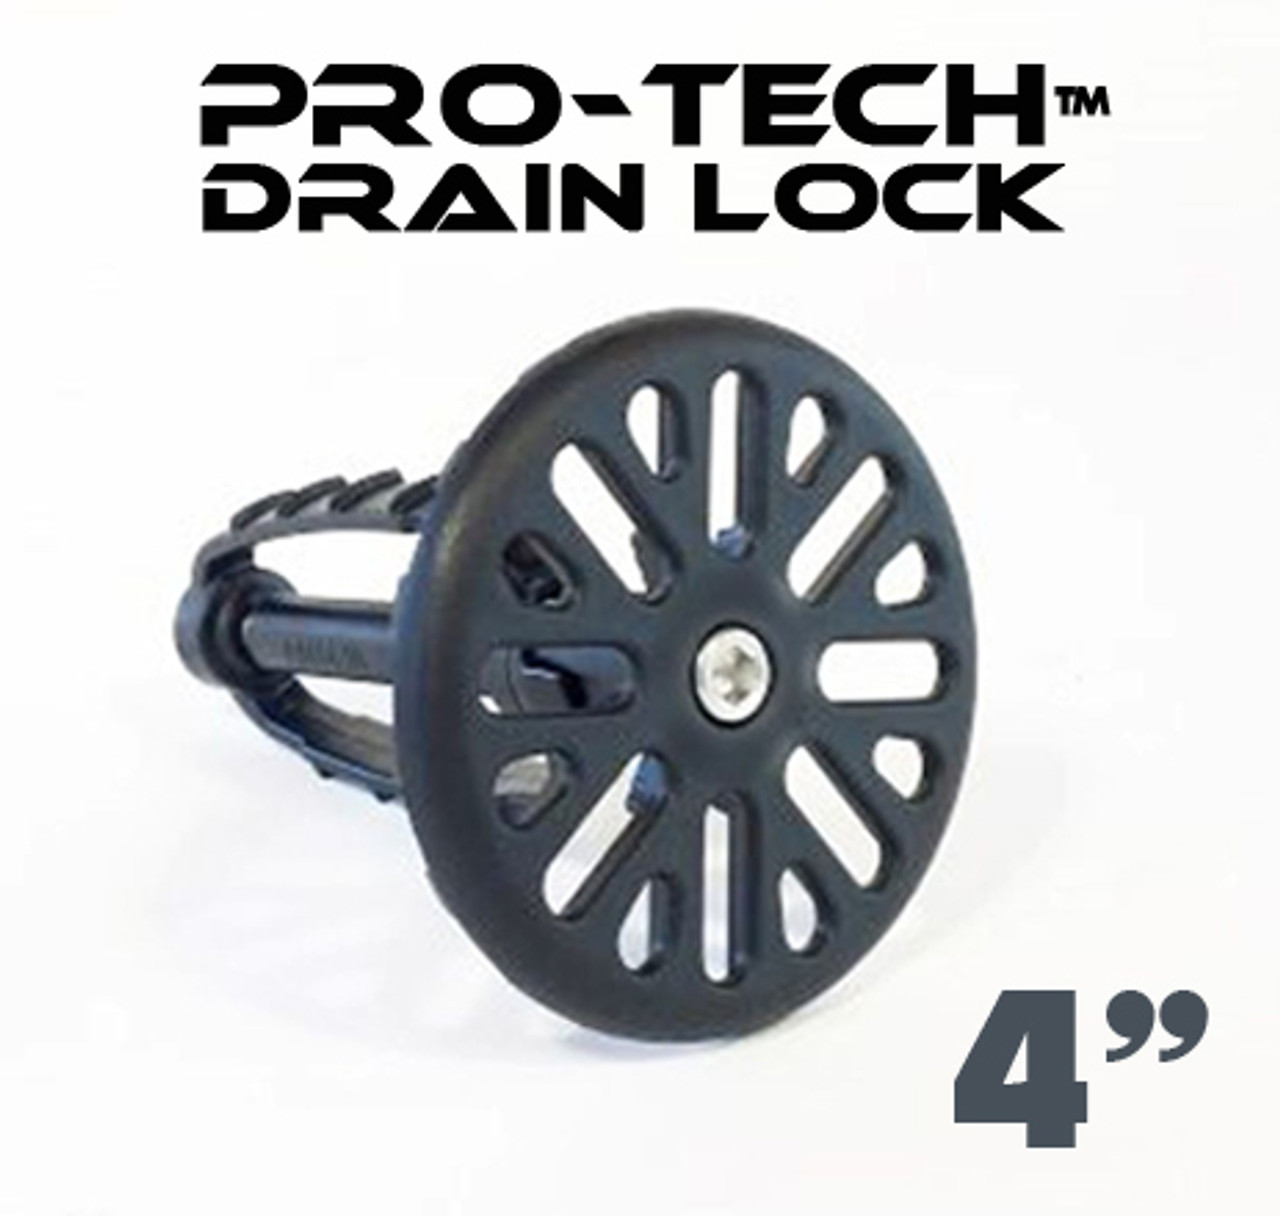 Pro-Tech Drain Lock (4 inch)